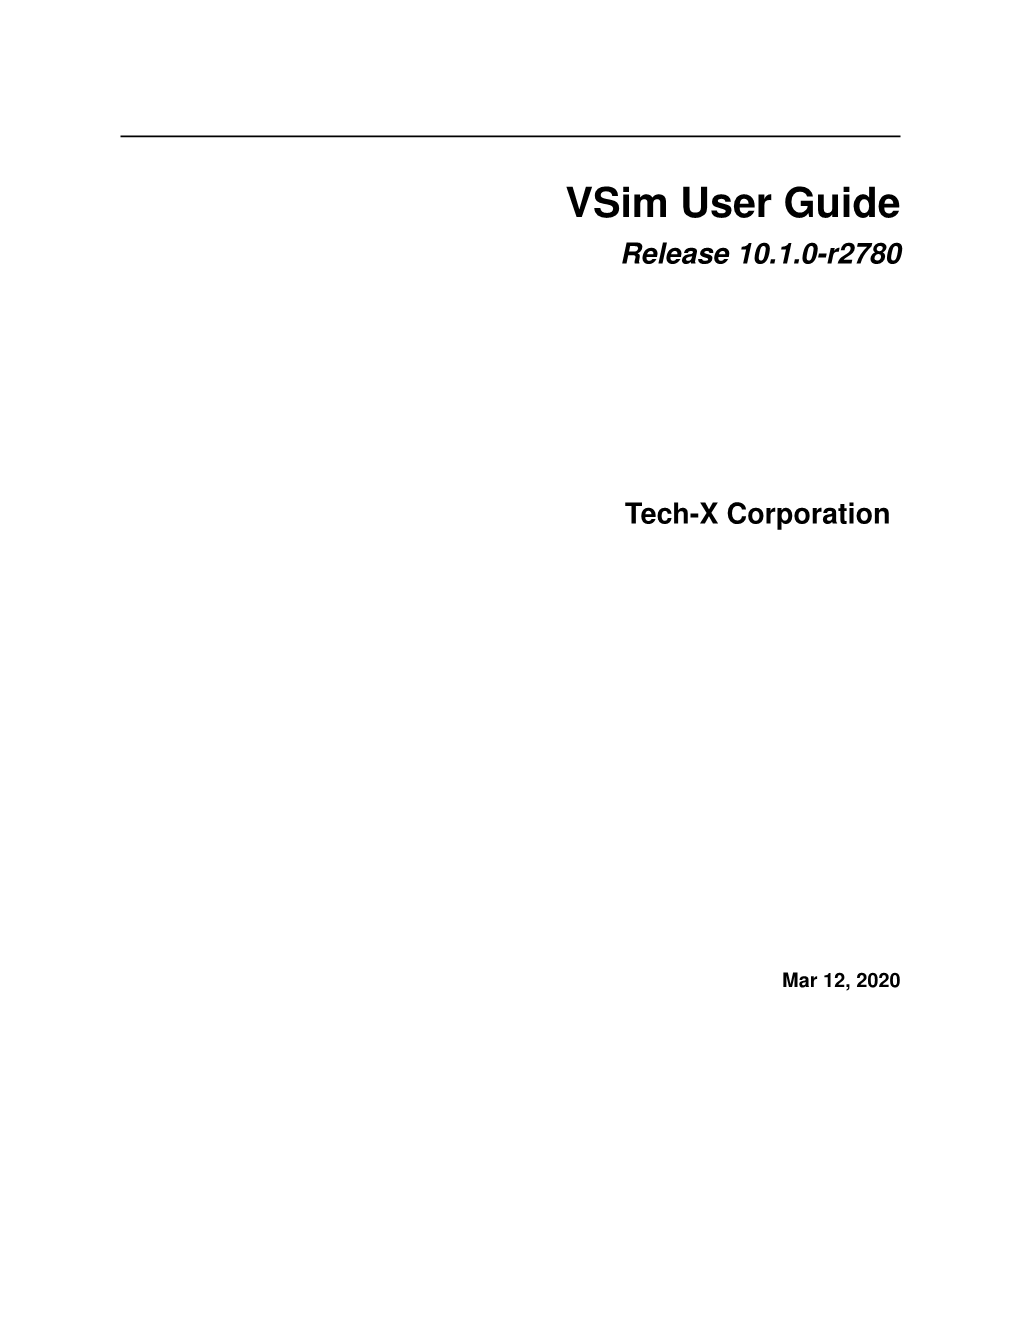 Vsim User Guide Release 10.1.0-R2780